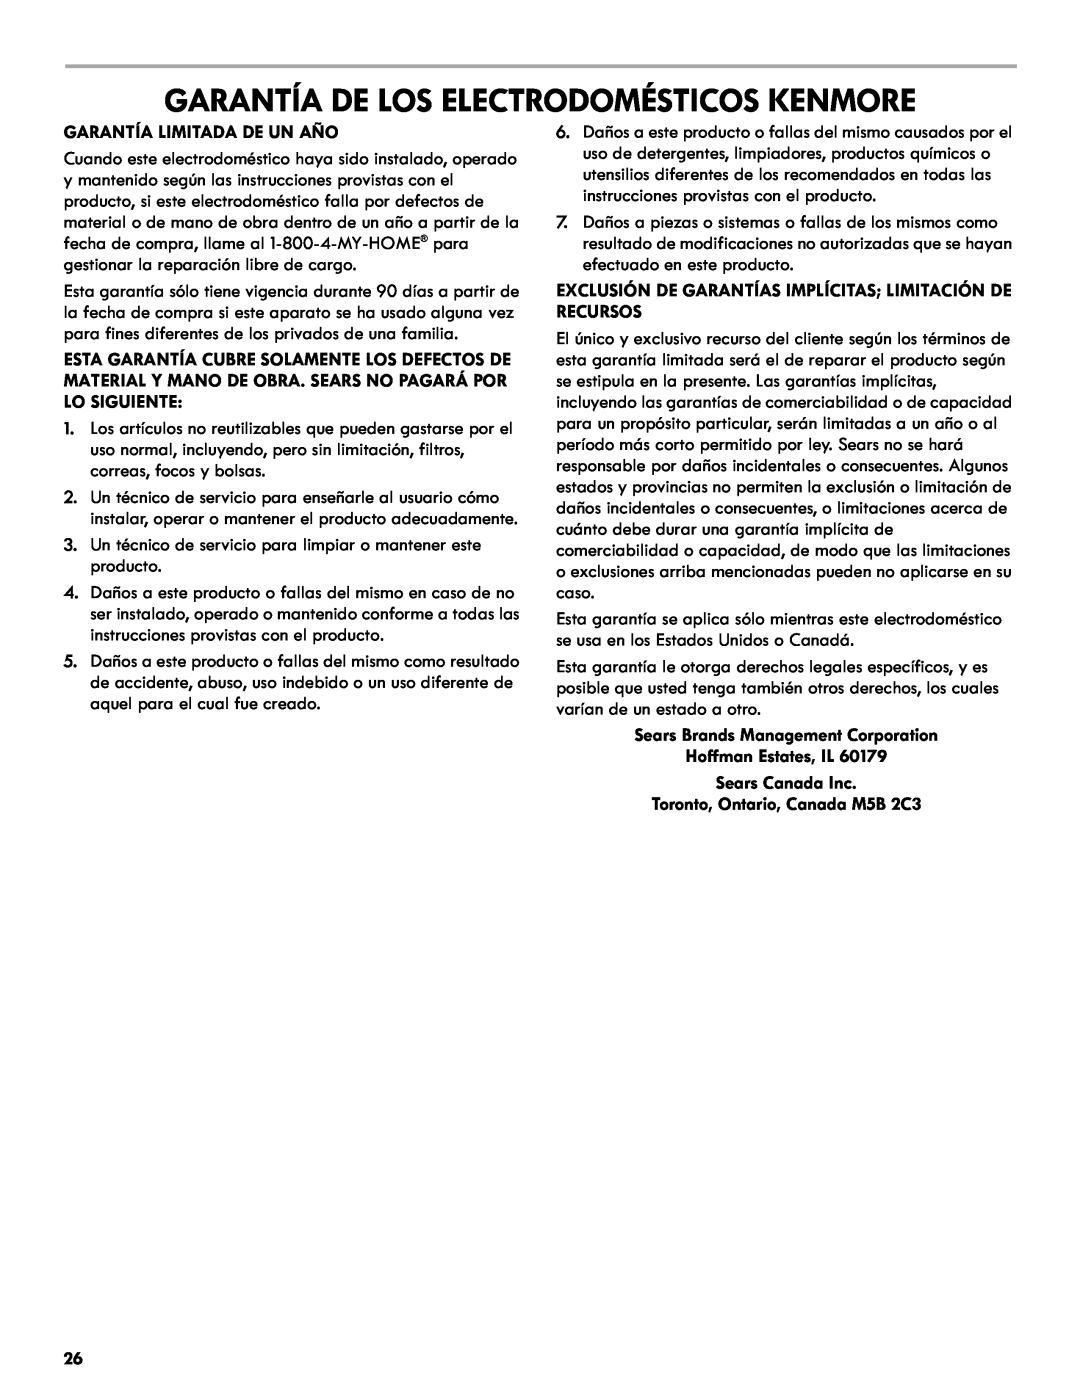 Kenmore 665.1327 Garantía De Los Electrodomésticos Kenmore, Garantía Limitada De Un Año, Toronto, Ontario, Canada M5B 2C3 